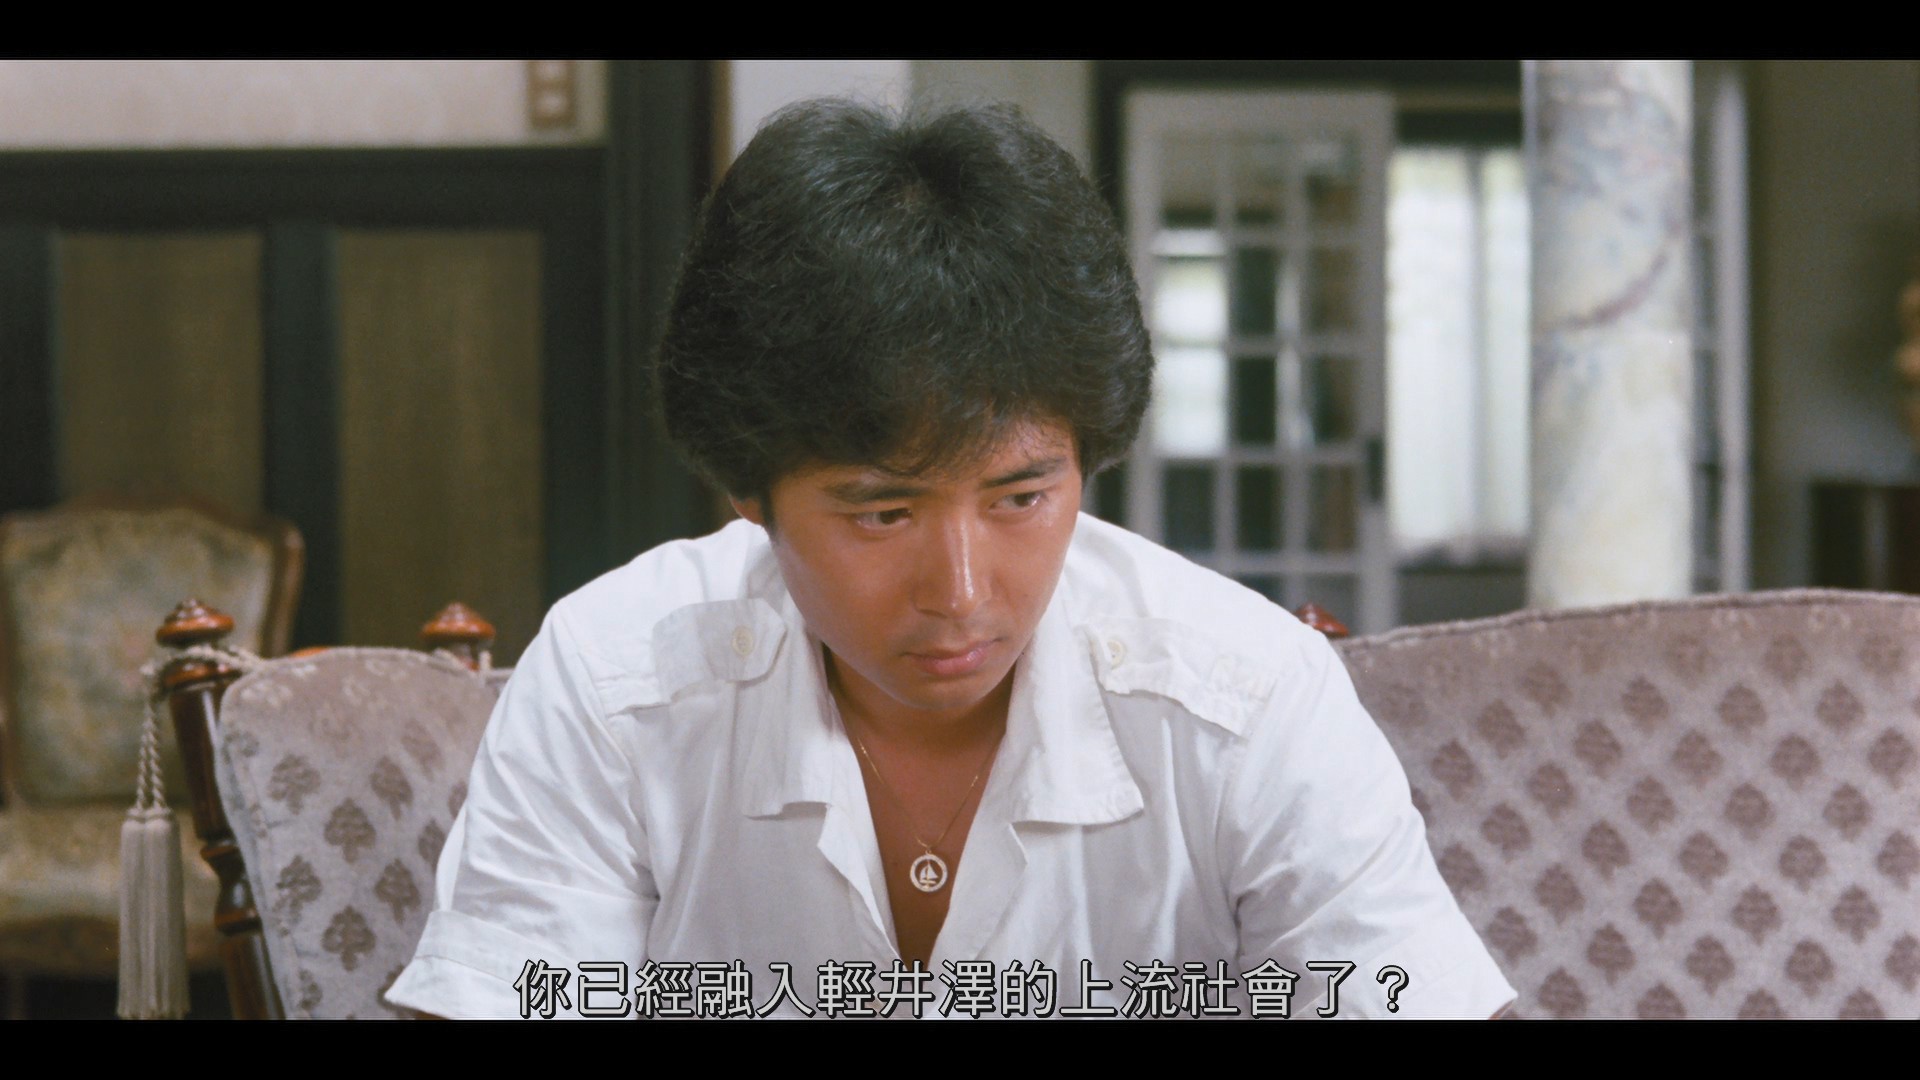 轻井泽夫人 / Karuizawa fujin[日版蓝光原盘][DIY正片.简繁字幕]  Lady Karuizawa 1982 JPN Blu-ray 1080p AVC TrueHD 2.0-blucook#398@CHDBits  [21.32 GB]-6.jpg